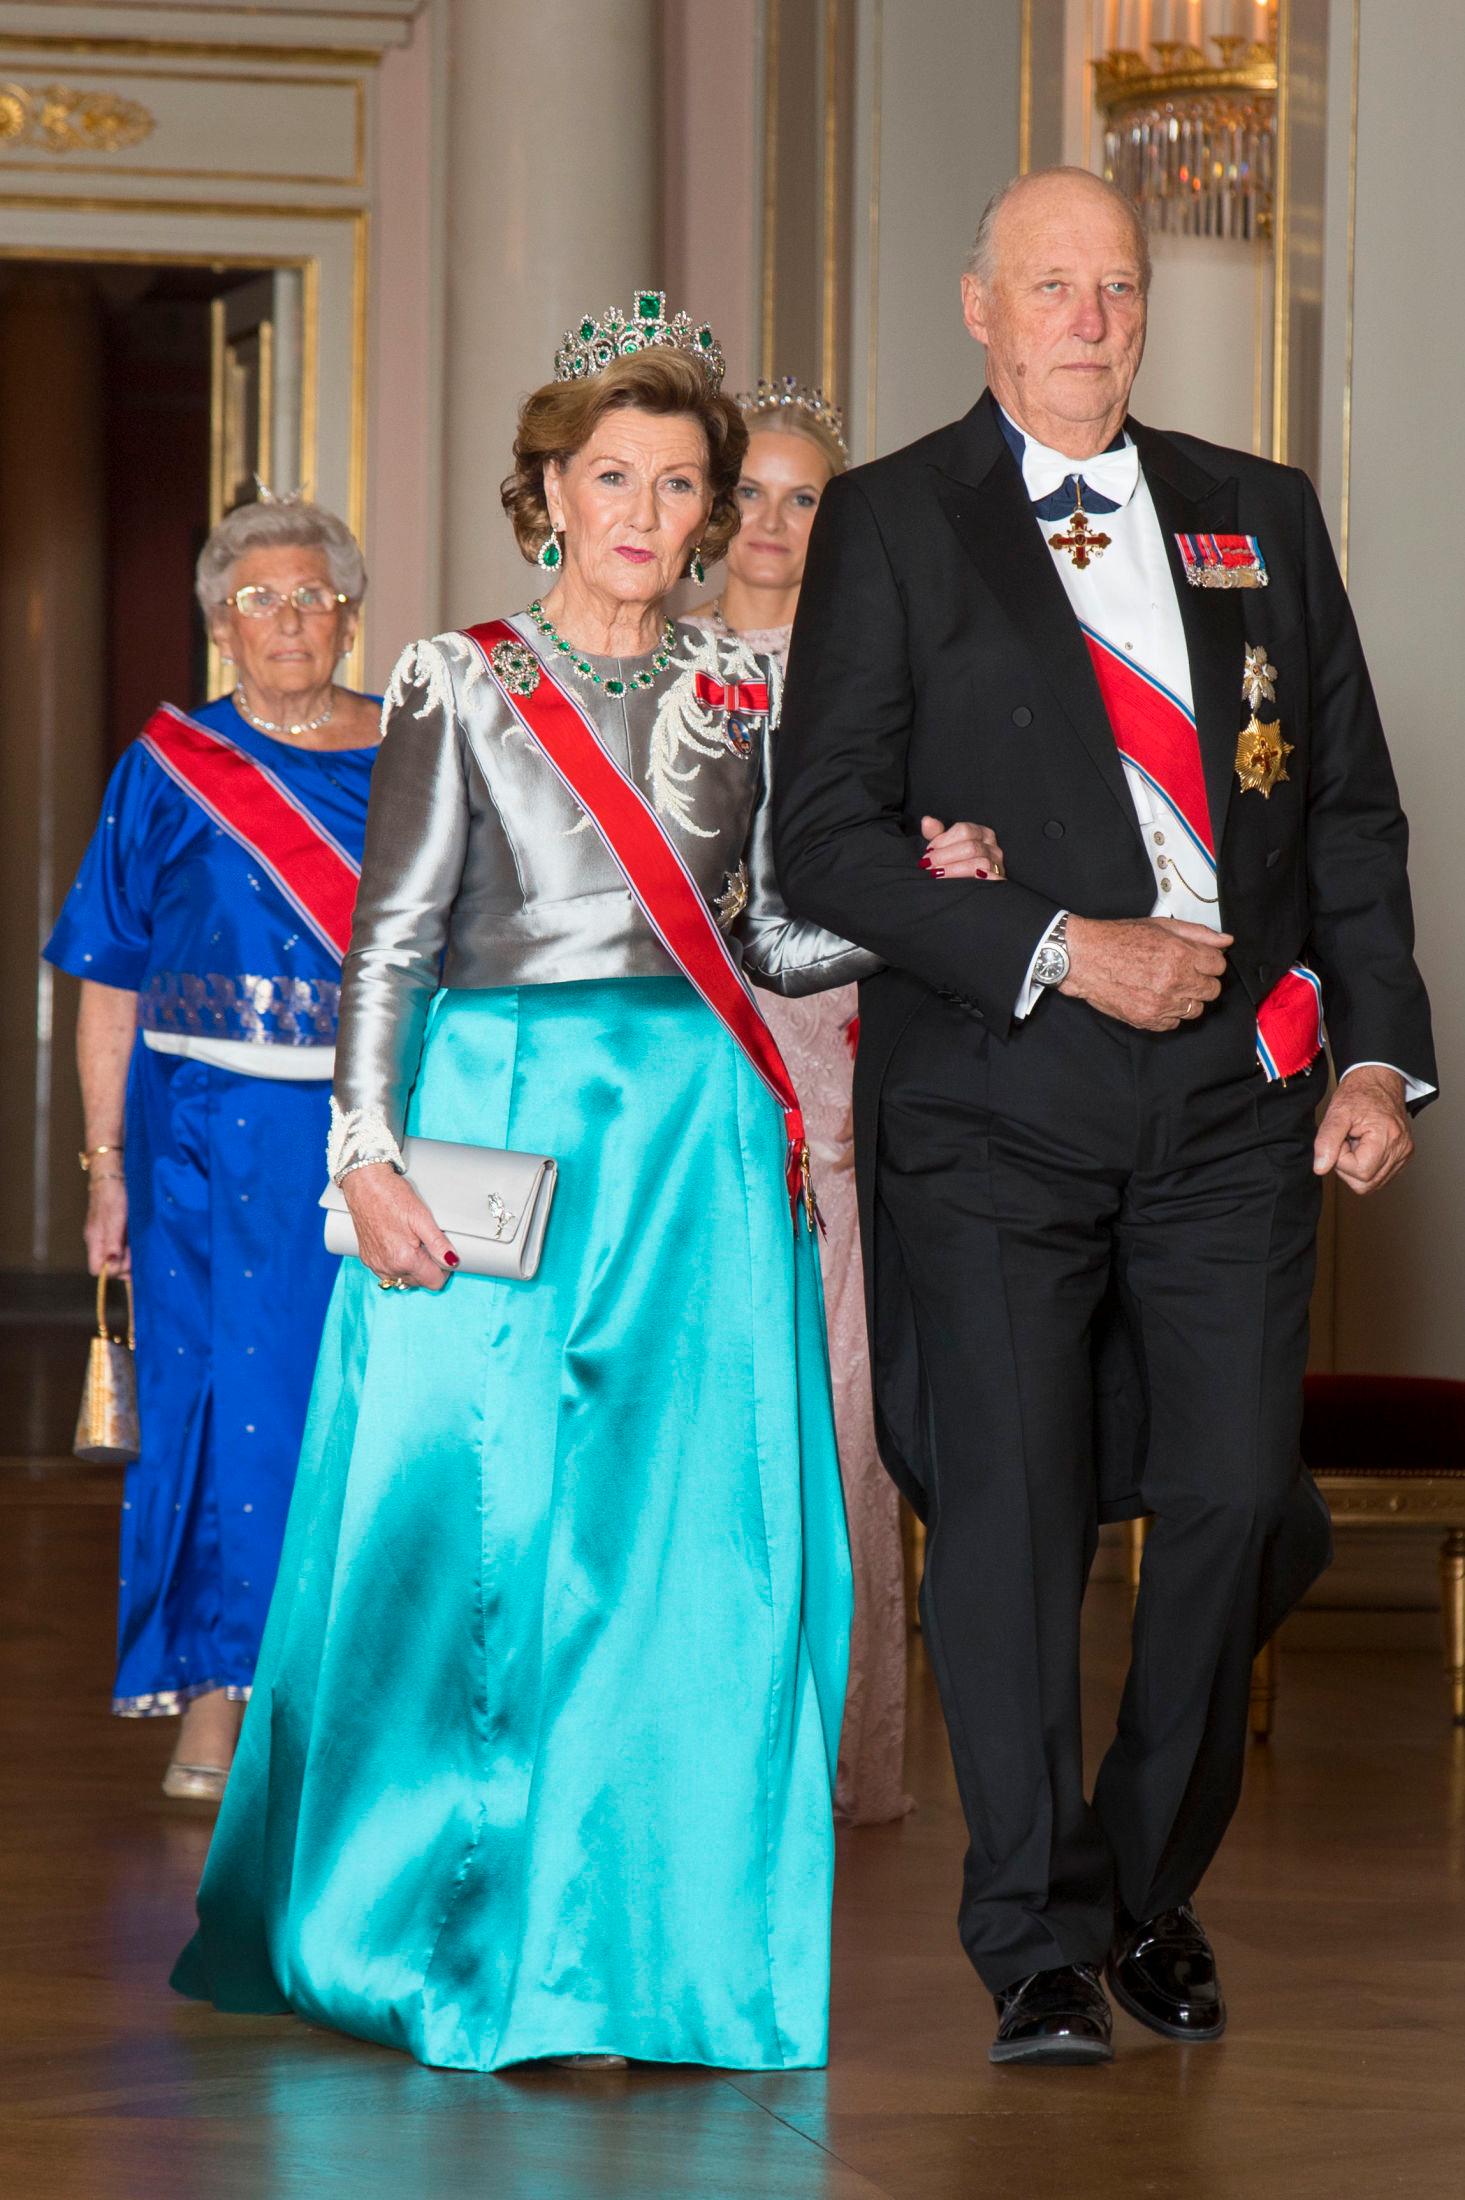 KLARE FOR STORTINGSMIDDAG: Kong Harald, dronning Sonja, kronprinsesse Mette-Marit og prinsesse Astrid ankommer den tradisjonsrike stortingsmiddagen på Slottet torsdag kveld. Foto: Heiko Junge / NTB scanpix